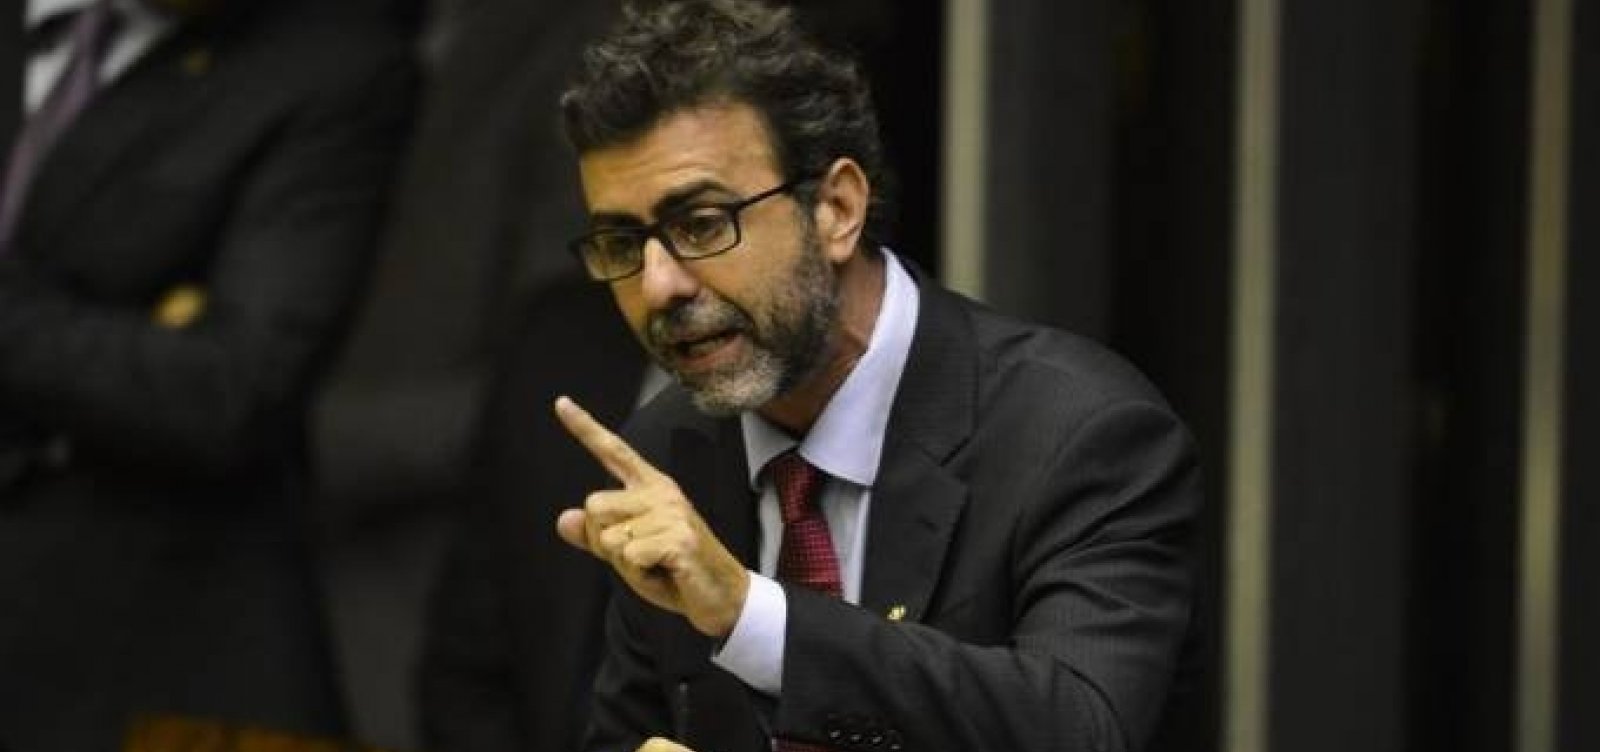 ‘Só vou para disputa se tiver aliança do campo progressista’, diz Freixo sobre eleição no Rio